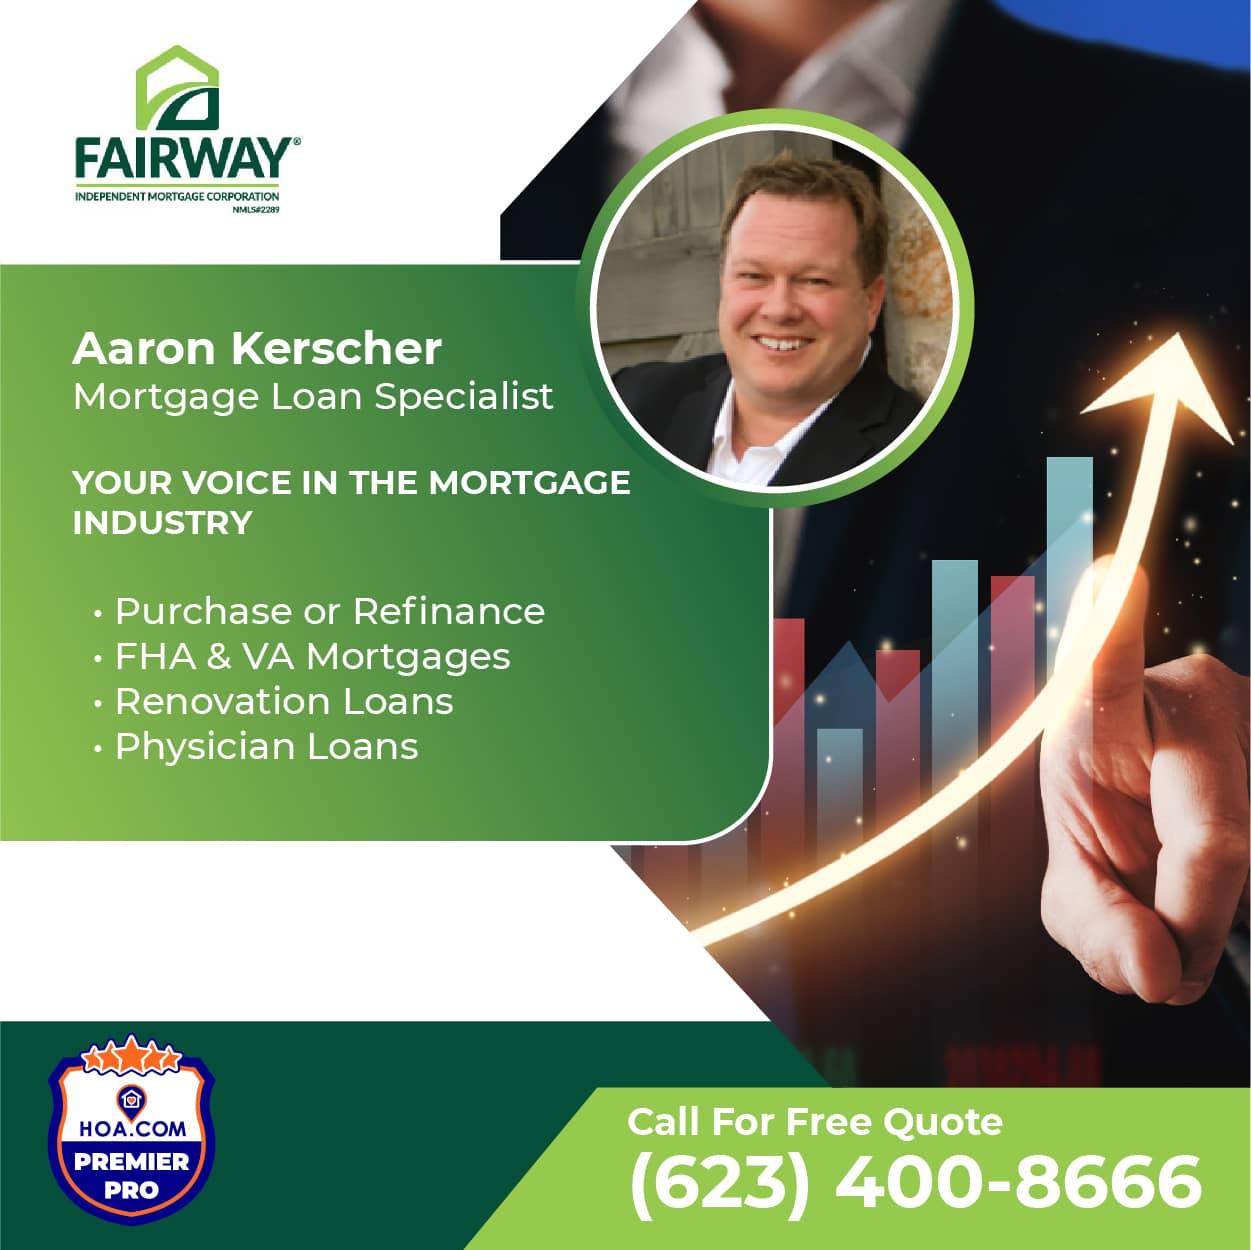 Aaron Kerscher Fairway Mortgage Corporation